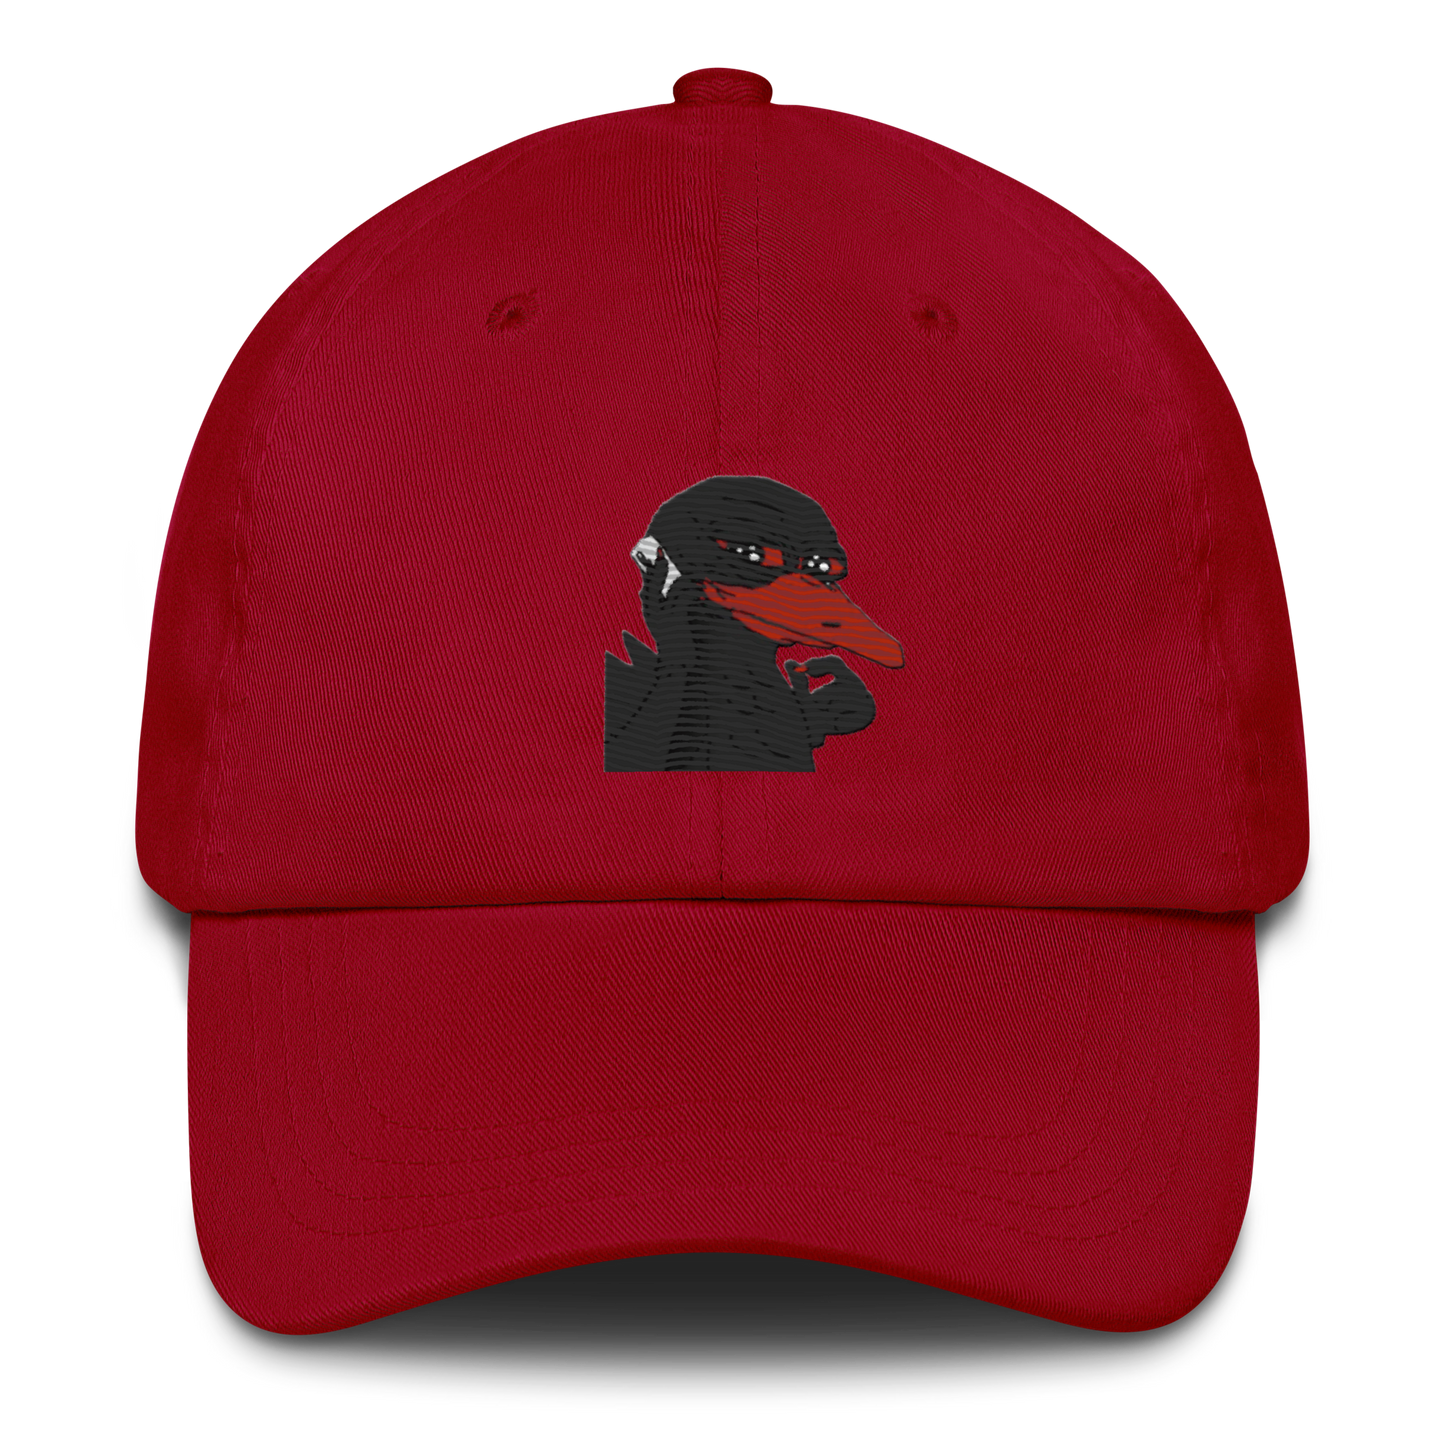 $dodo hat